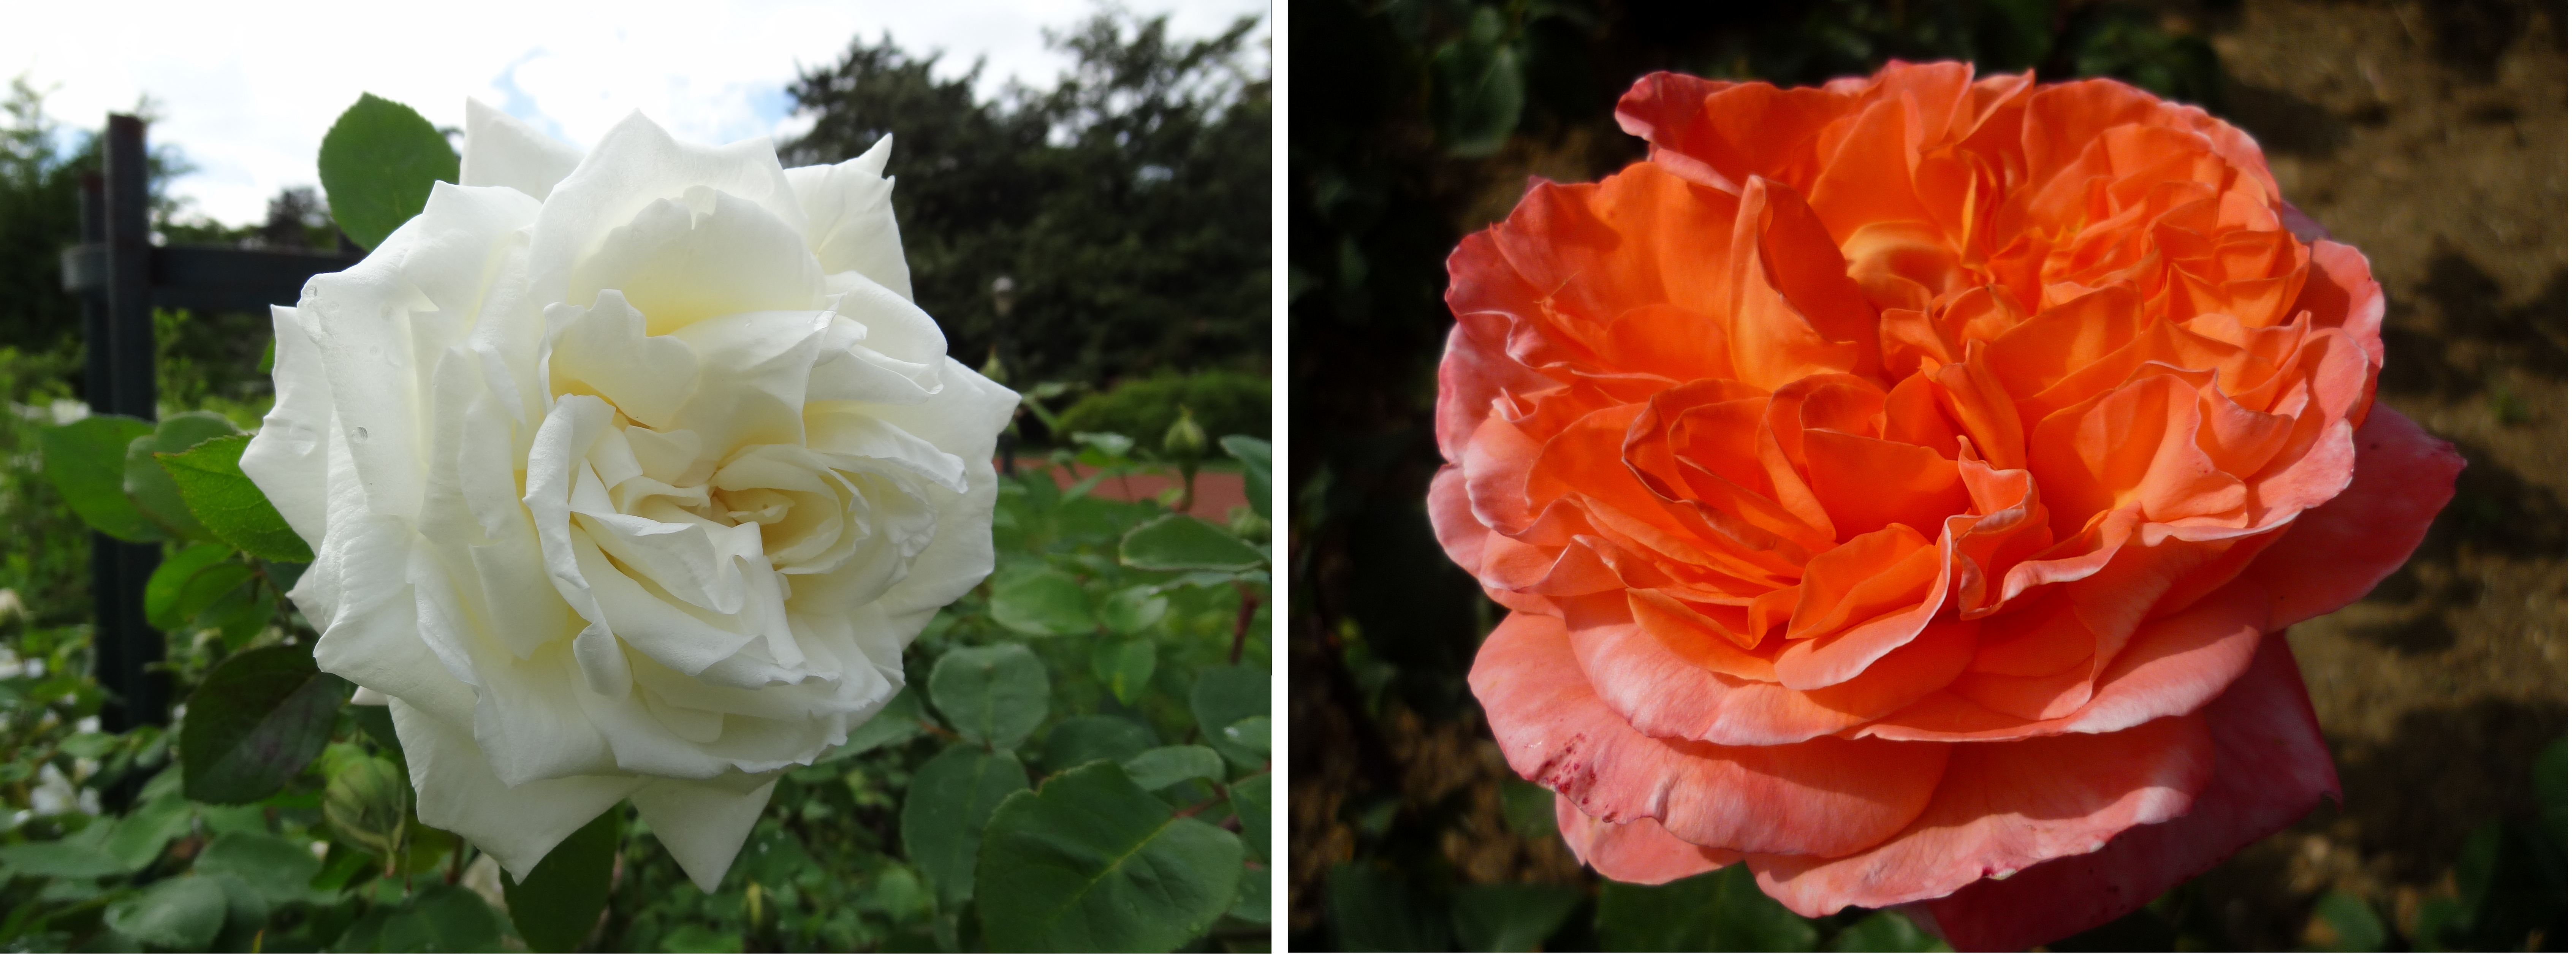 Exemples de deux roses d’obtenteurs lyonnais